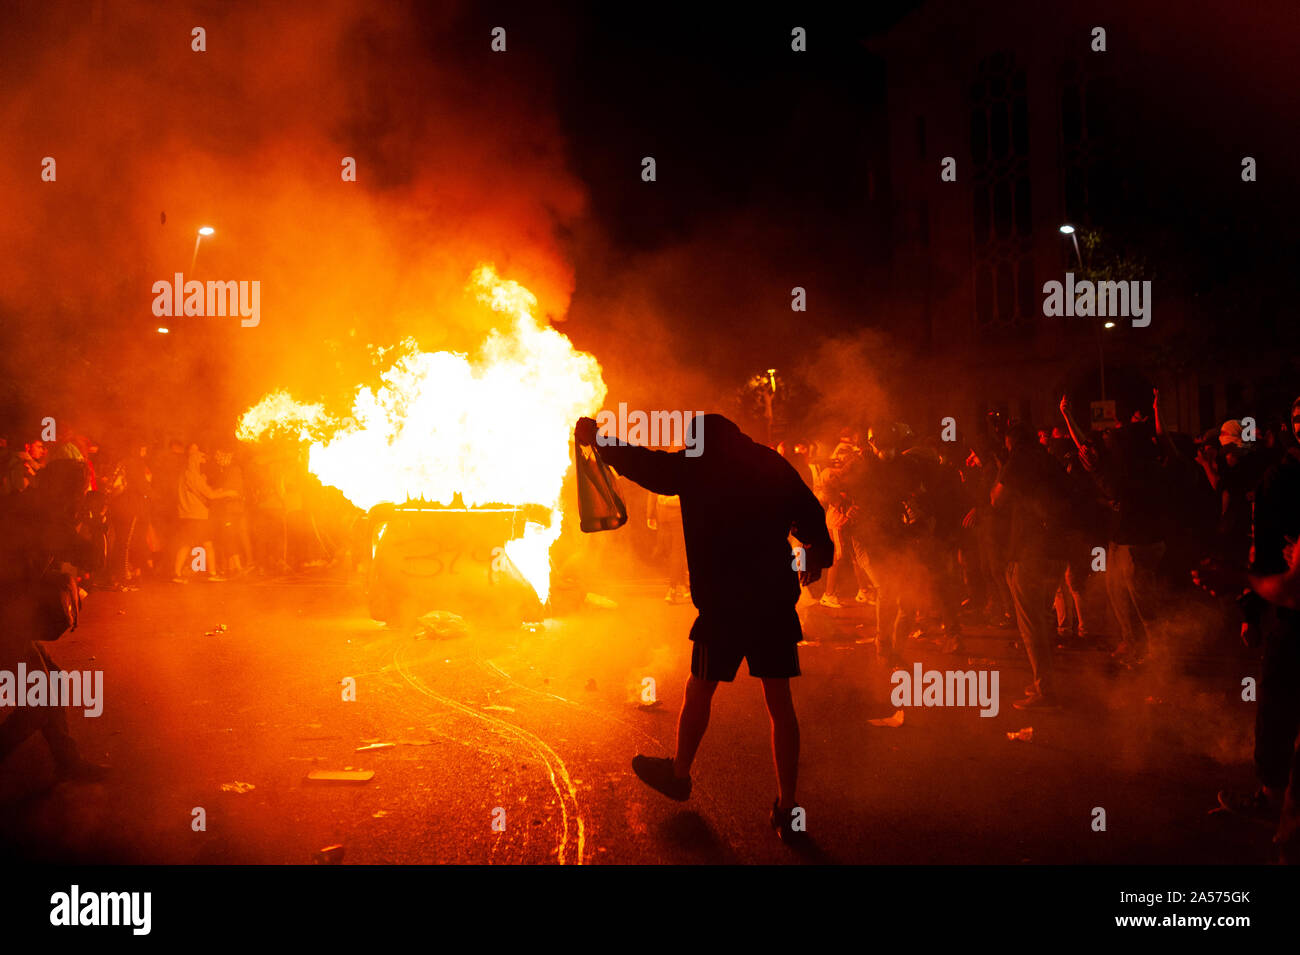 Barcelone, Espagne - 16 octobre 2019 : spectaculaire effrayant image de jeune pro catalan militant mars contre l'incendie au cours des émeutes avec la police ami Banque D'Images